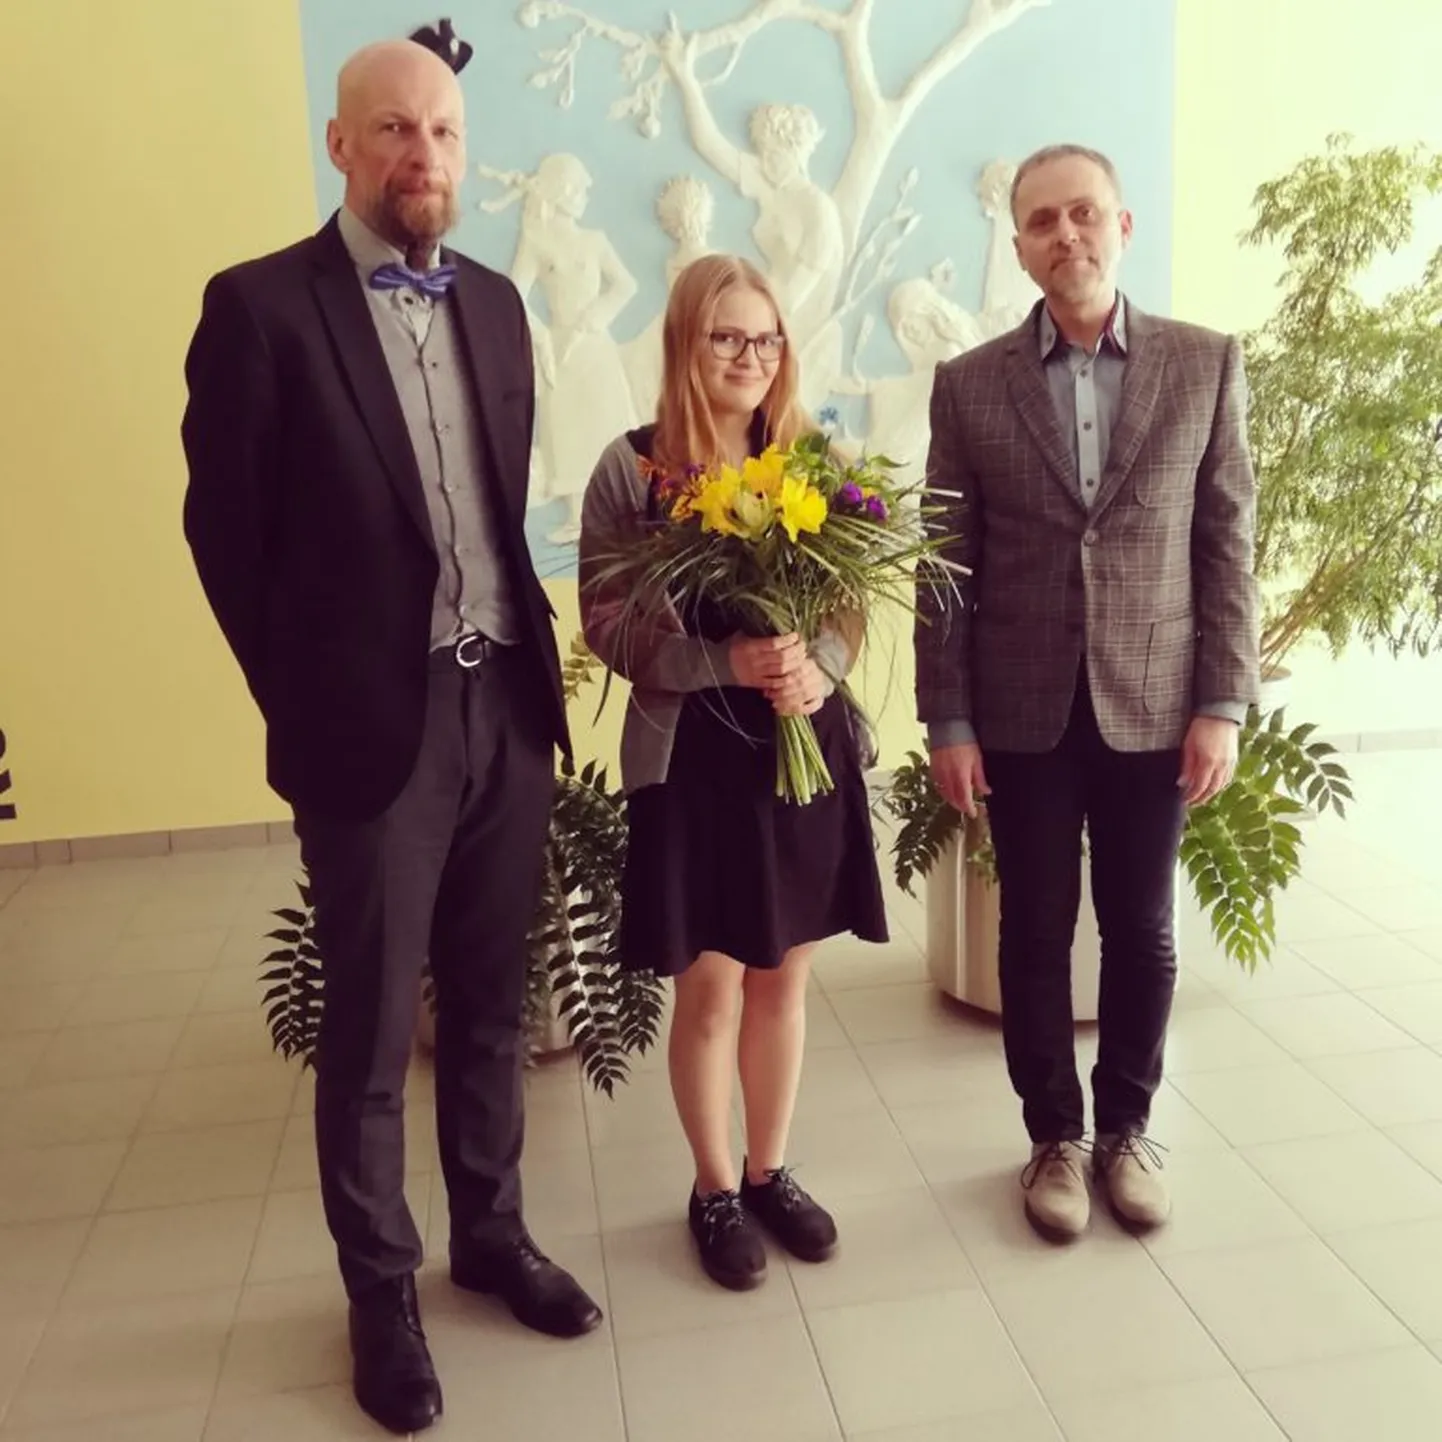 Stipendiumi võitja Kristi Umblejaga jagavad rõõmu Räpina aianduskooli direktor Kalle Toom (vasakul) ja STIHLi maaletooja Farron Tehnika OÜ esindaja Marko Altmäe.